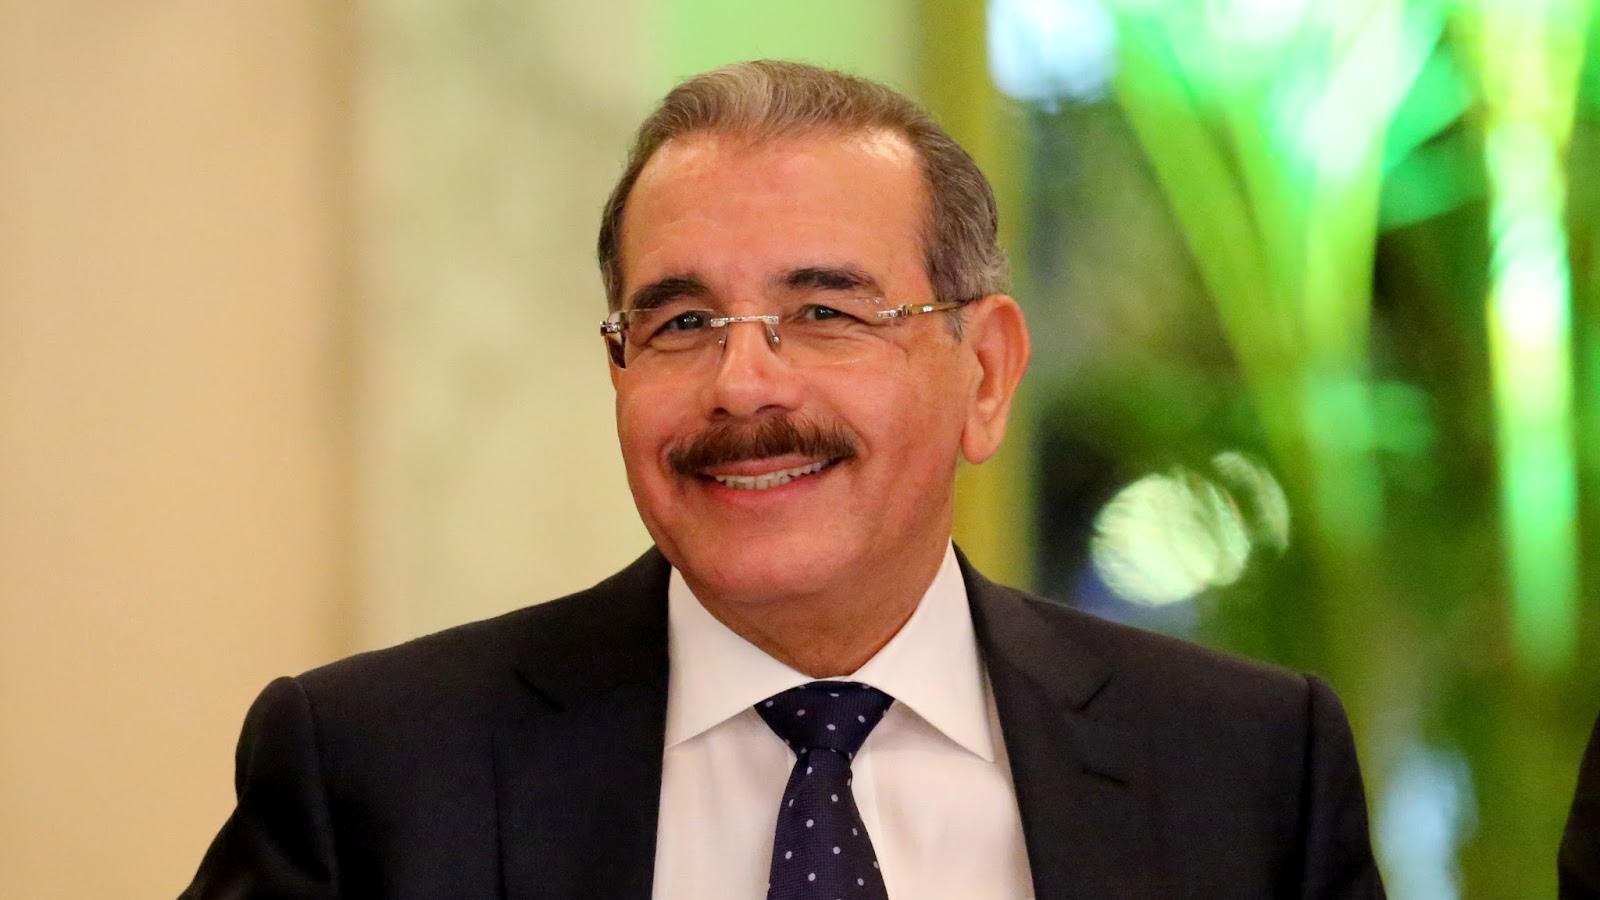 Danilo Medina viajará a Cuba para participar en acto de acuerdo entre las FARC y gobierno de Colombia